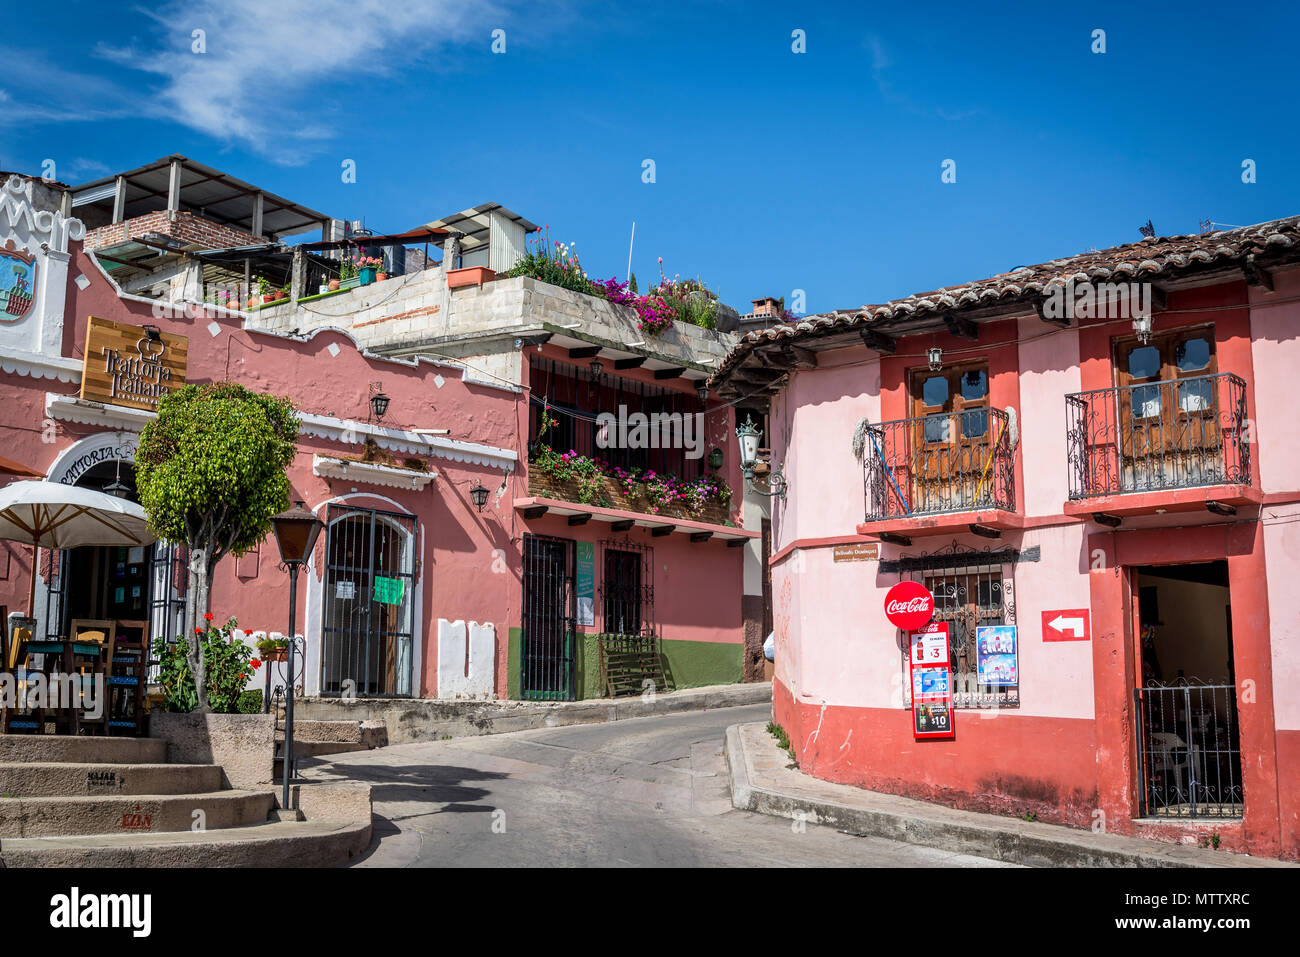 Bunte Häuser, San Cristobal de las Casas, Chiapas, Mexiko Stockfotografie -  Alamy